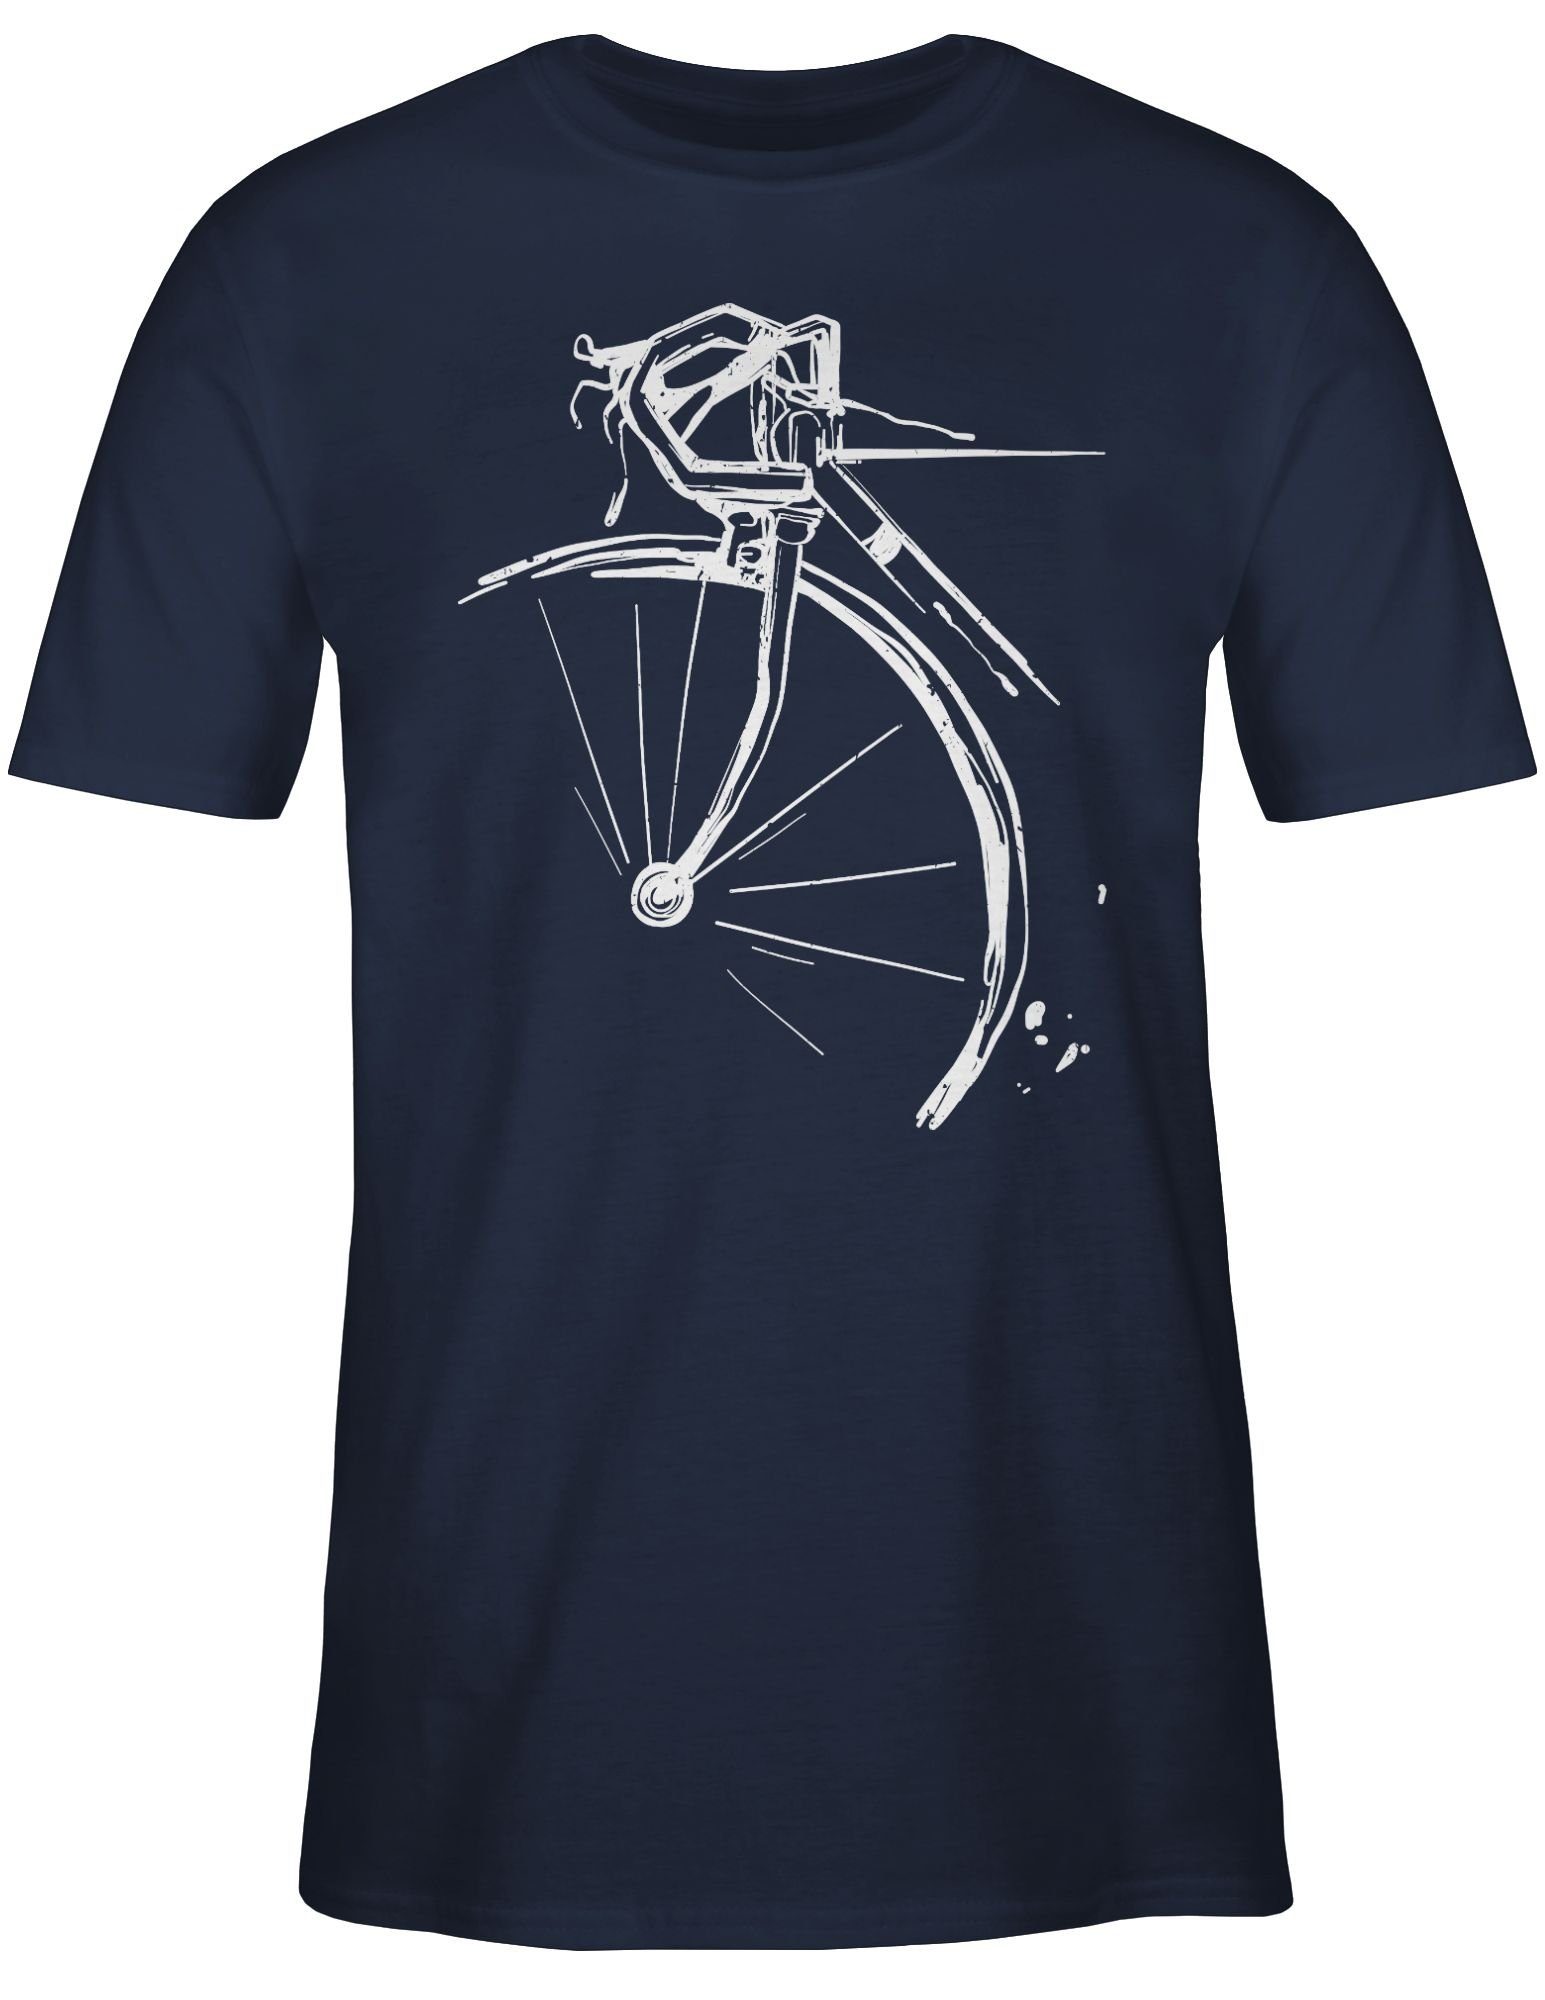 Rennrad Fahrrad T-Shirt Shirtracer Navy Radsport 01 Fahrrad Blau Bekleidung